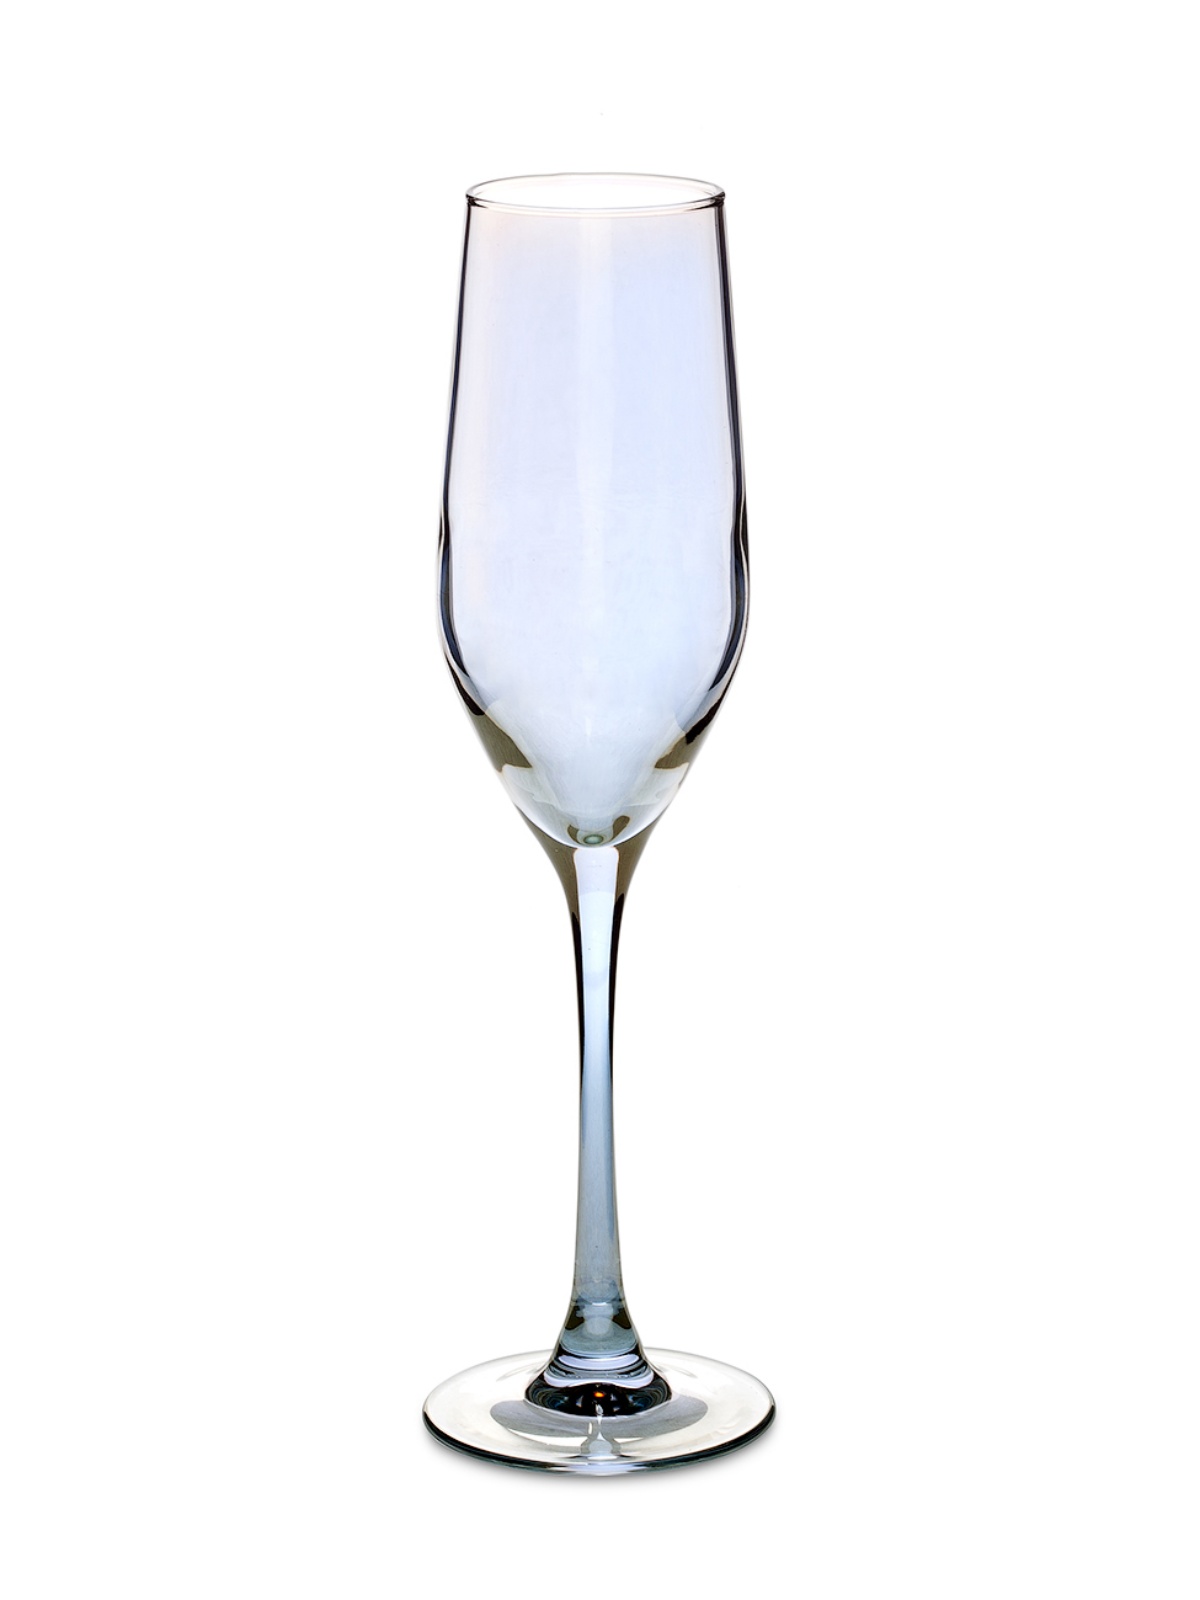 Набор бокалов для шампанского СЕЛЕСТ ЗОЛОТИСТЫЙ ХАМЕЛЕОН 6шт 160мл LUMINARC P1636 набор бокалов для игристых вин chef